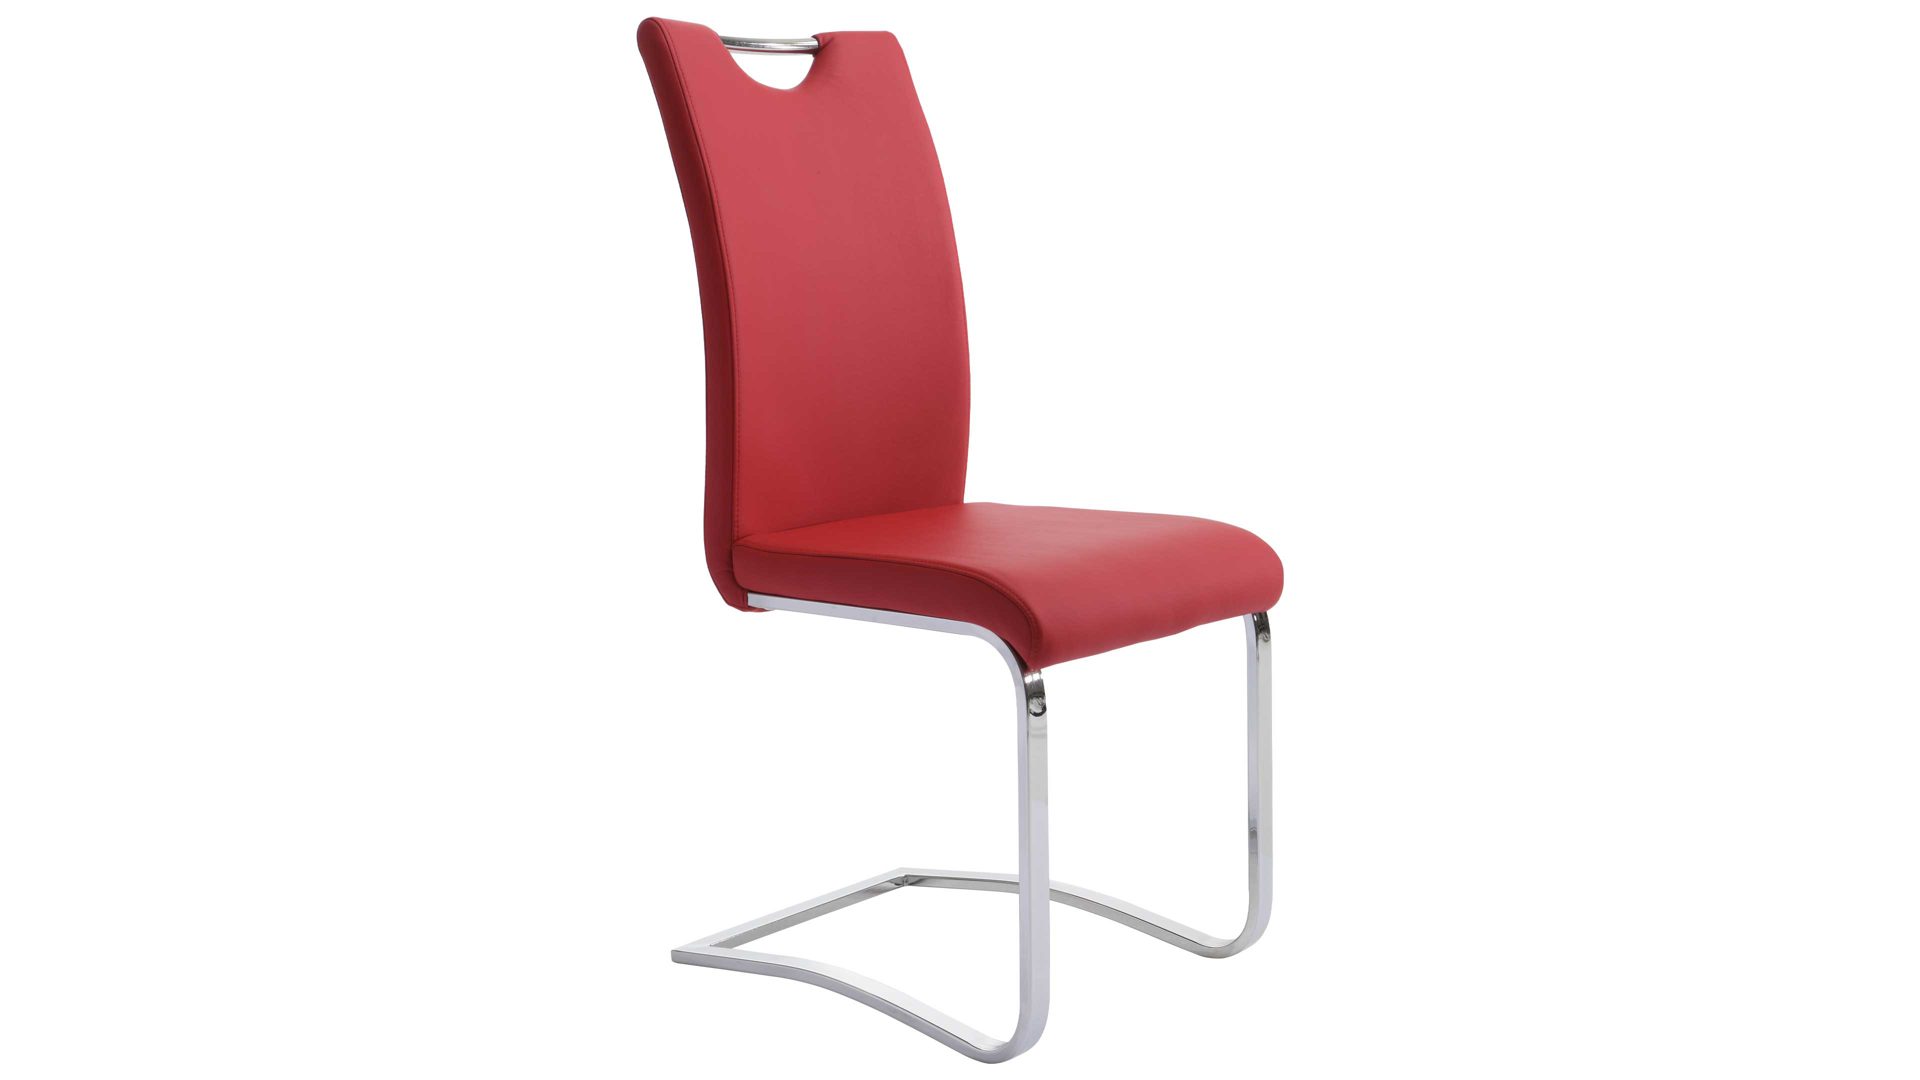 Schwingstuhl Mca furniture aus Stoff in Rot Schwingstuhl Köln bzw. Freischwinger als Esszimmermöbel rotes Kunstleder